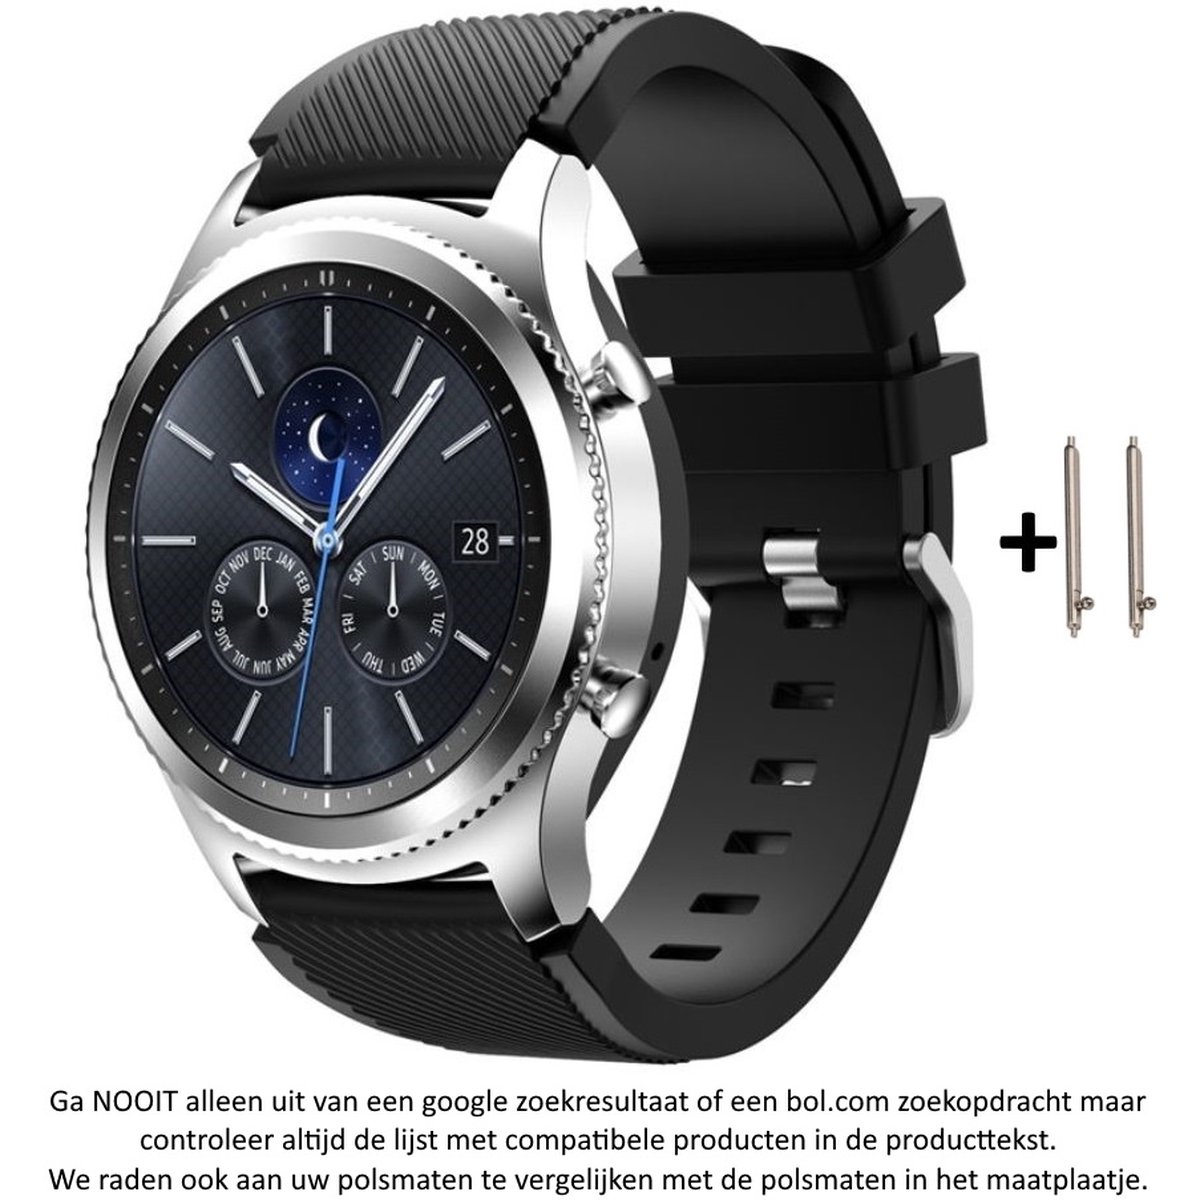 Zwart Siliconen Bandje geschikt voor 22mm Smartwatches (zie compatibele modellen) van Samsung, LG, Seiko, Asus, Pebble, Huawei, Cookoo, Vostok en Vector - 22 mm rubber smartwatch strap - Gear S3 - LG Watch